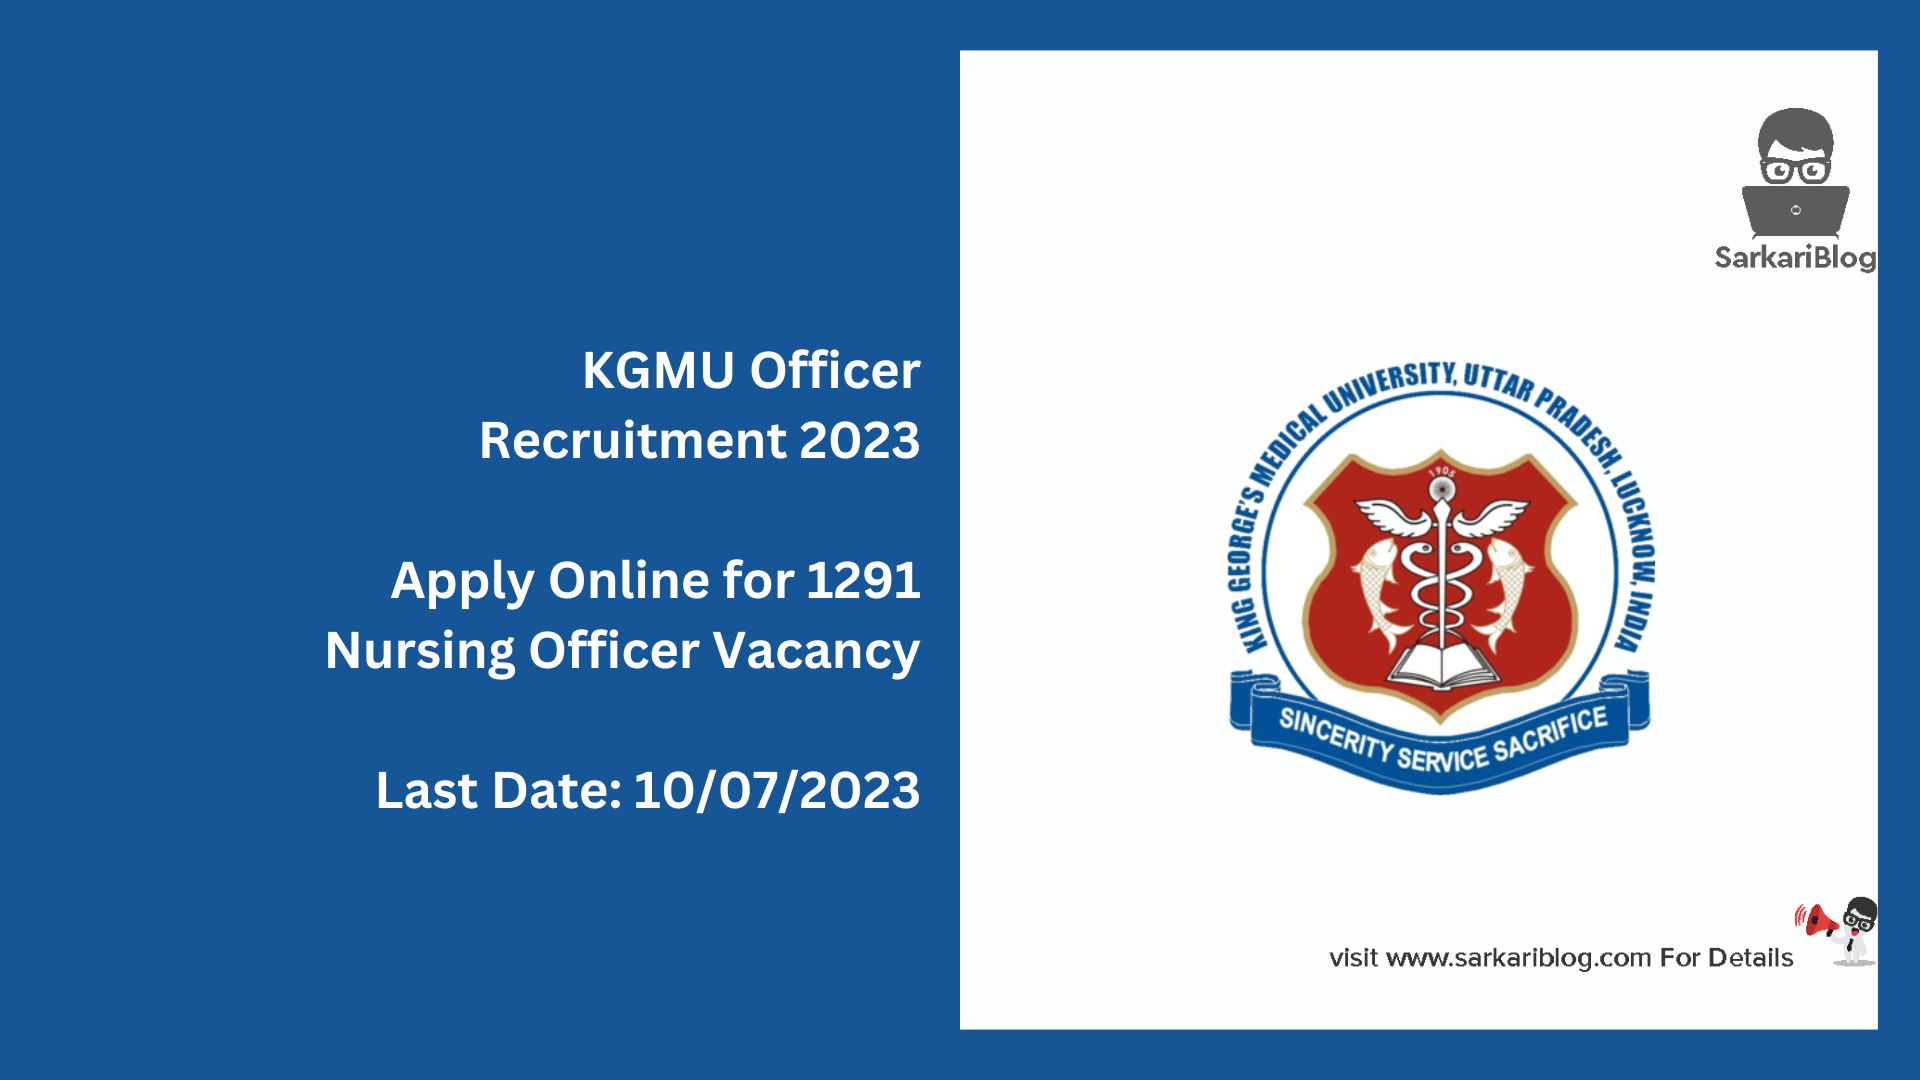 KGMU Officer Recruitment 2023